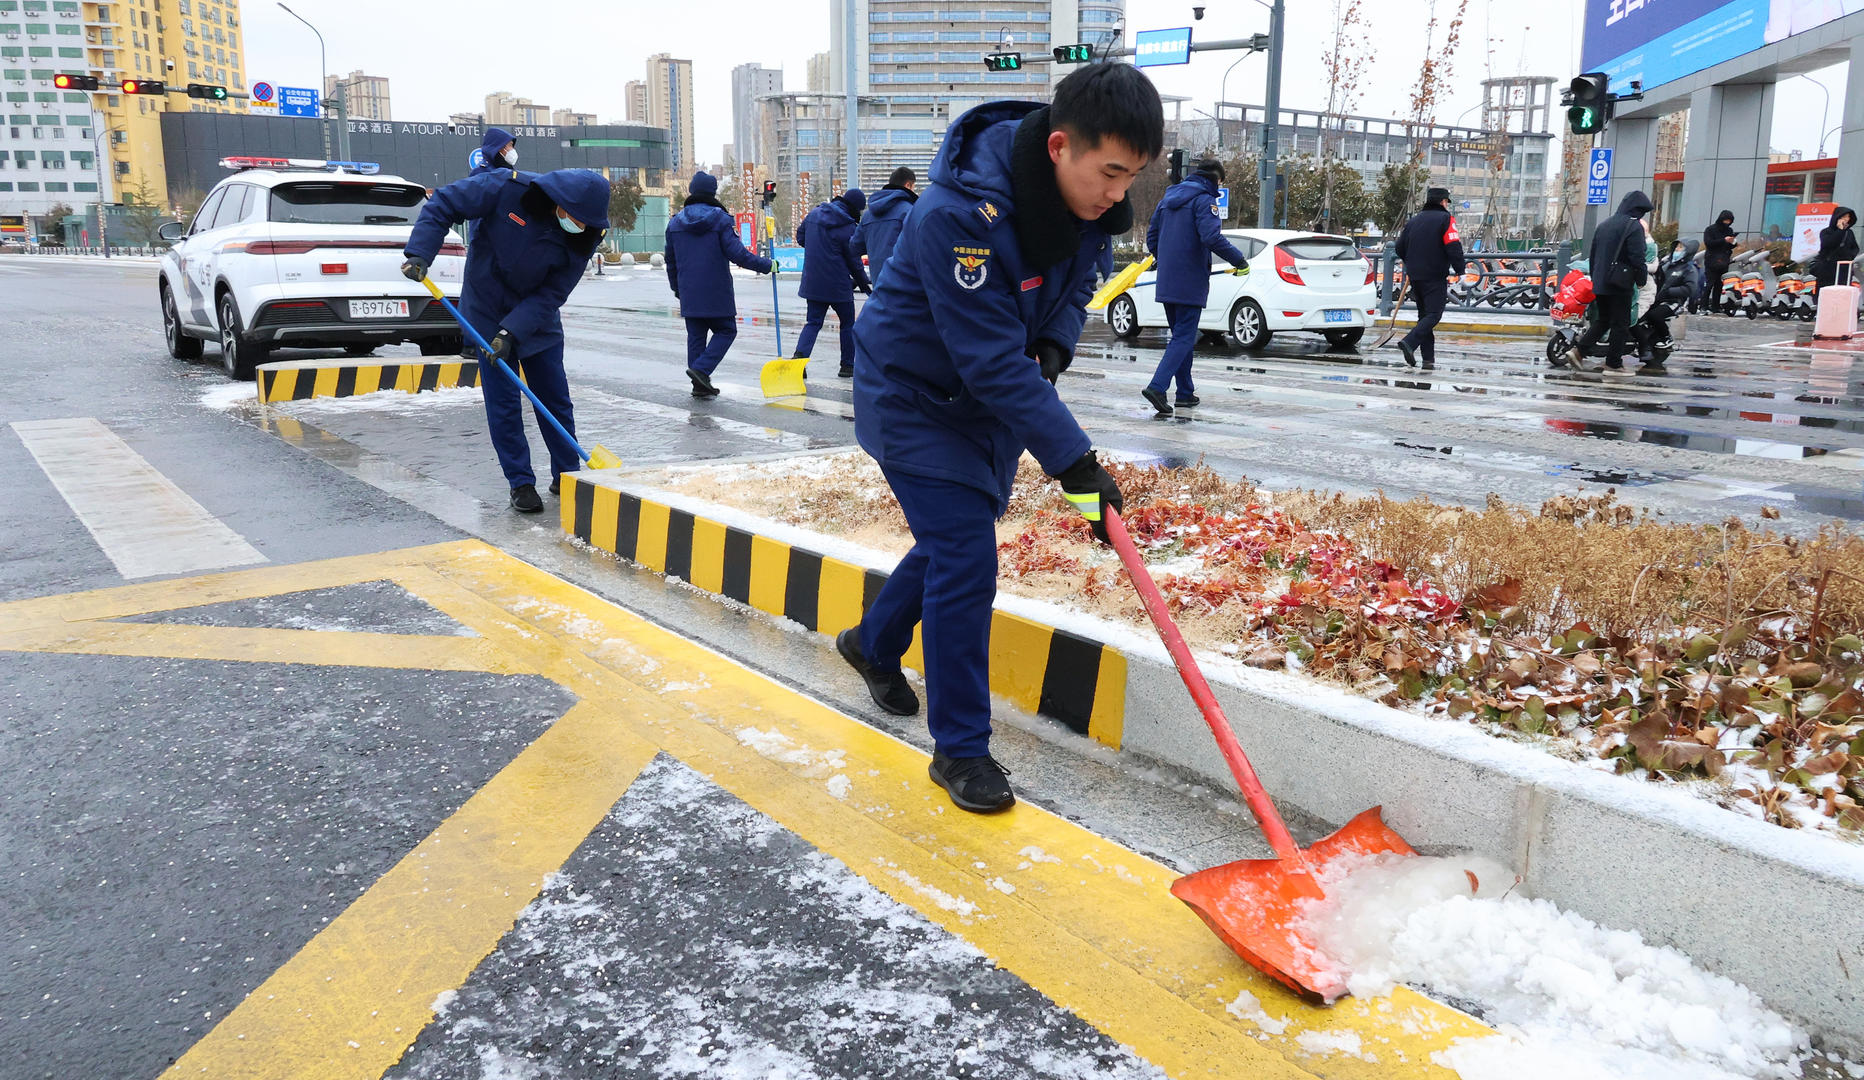 ▲2月1日，江苏连云港，铁路连云港站前广场，志愿者在清扫路面积雪。据视觉中国